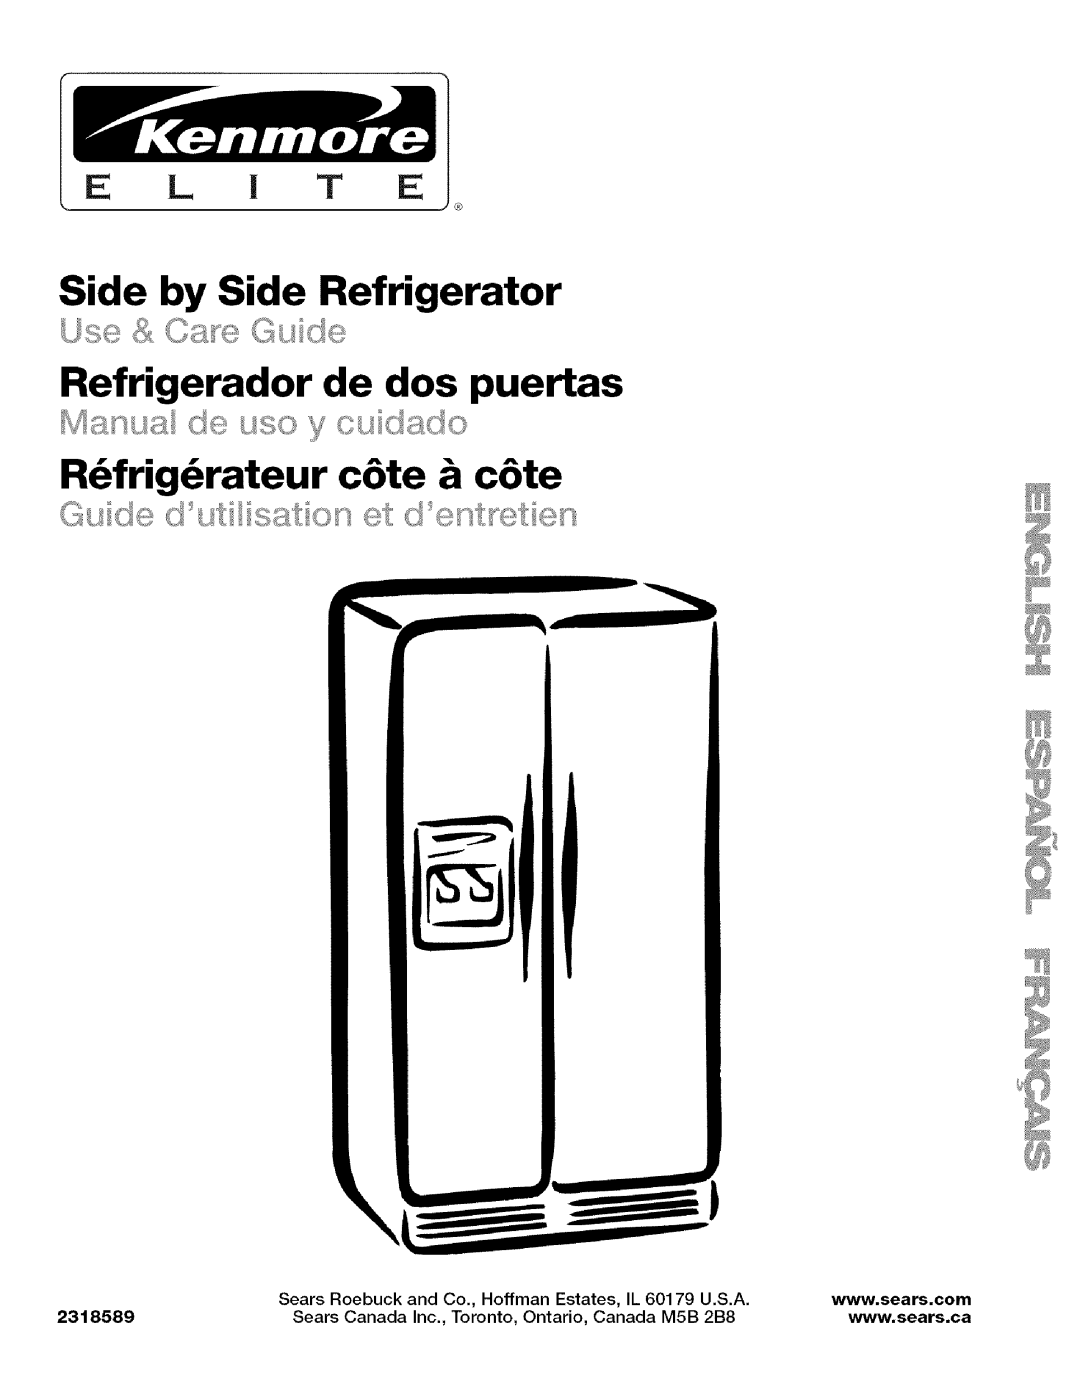 Kenmore 2318589 manual Side by Side Refrigerator, Refrigerador de dos puertas, R_frig_rateur c6te & c6te, Sears Roebuck 